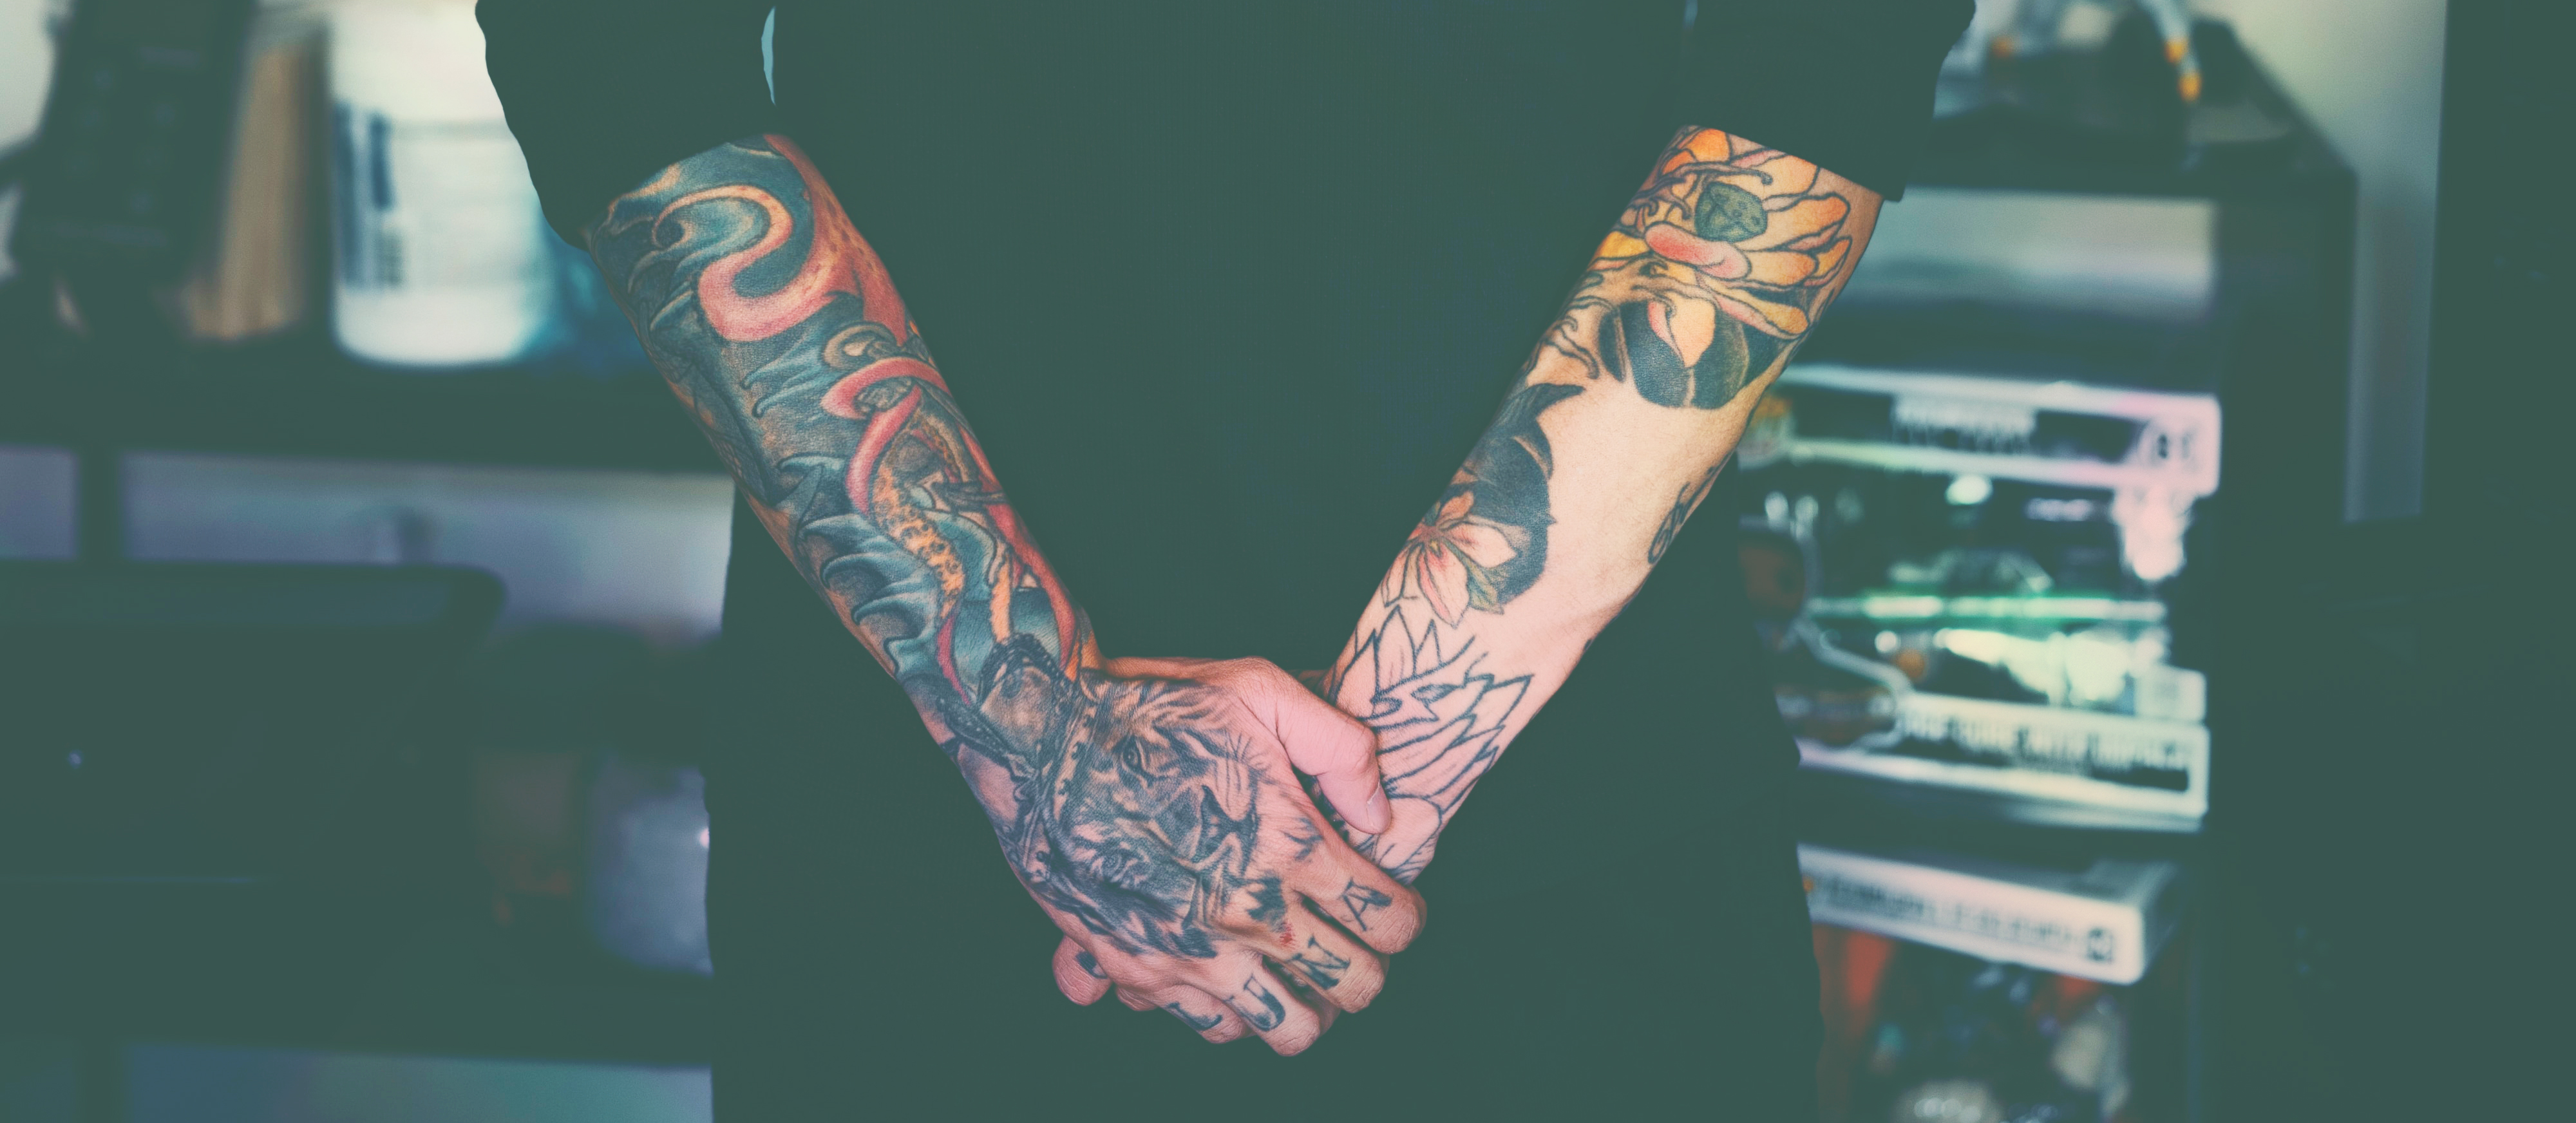 Believers mark their faith with tattoos